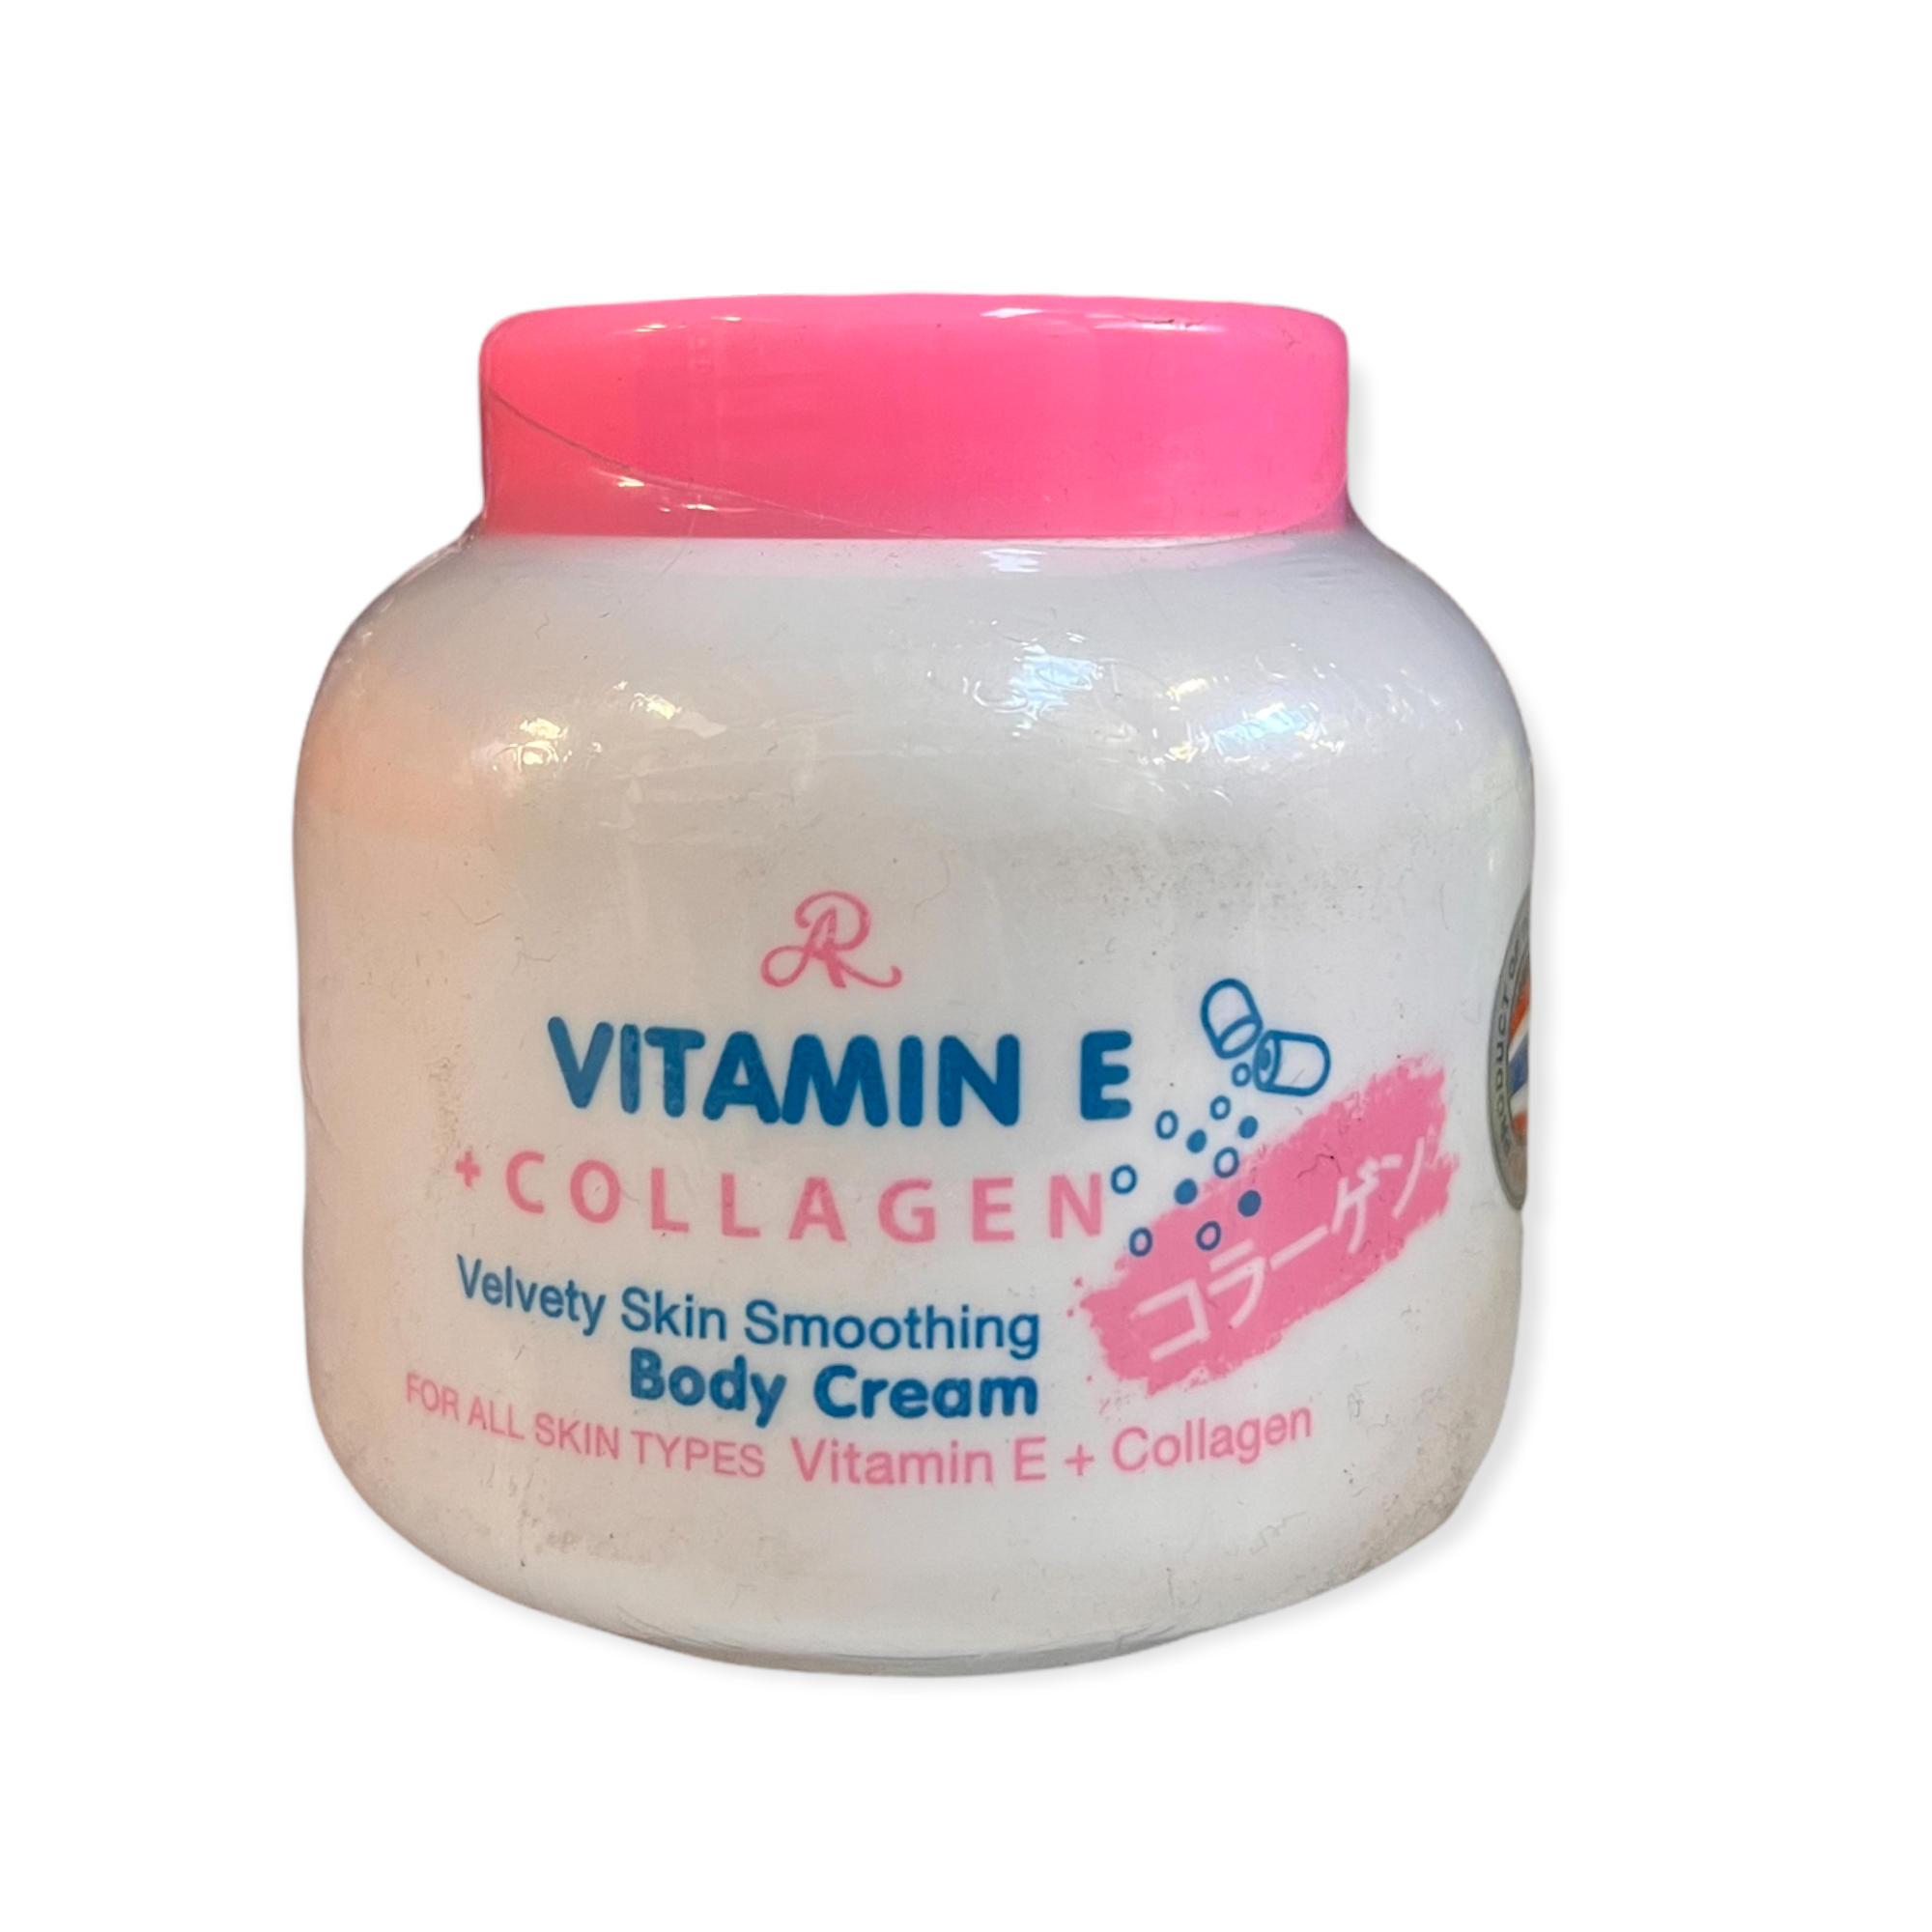 AR Vitamin E Collagen Vvety Skin Smoothing Body Cream